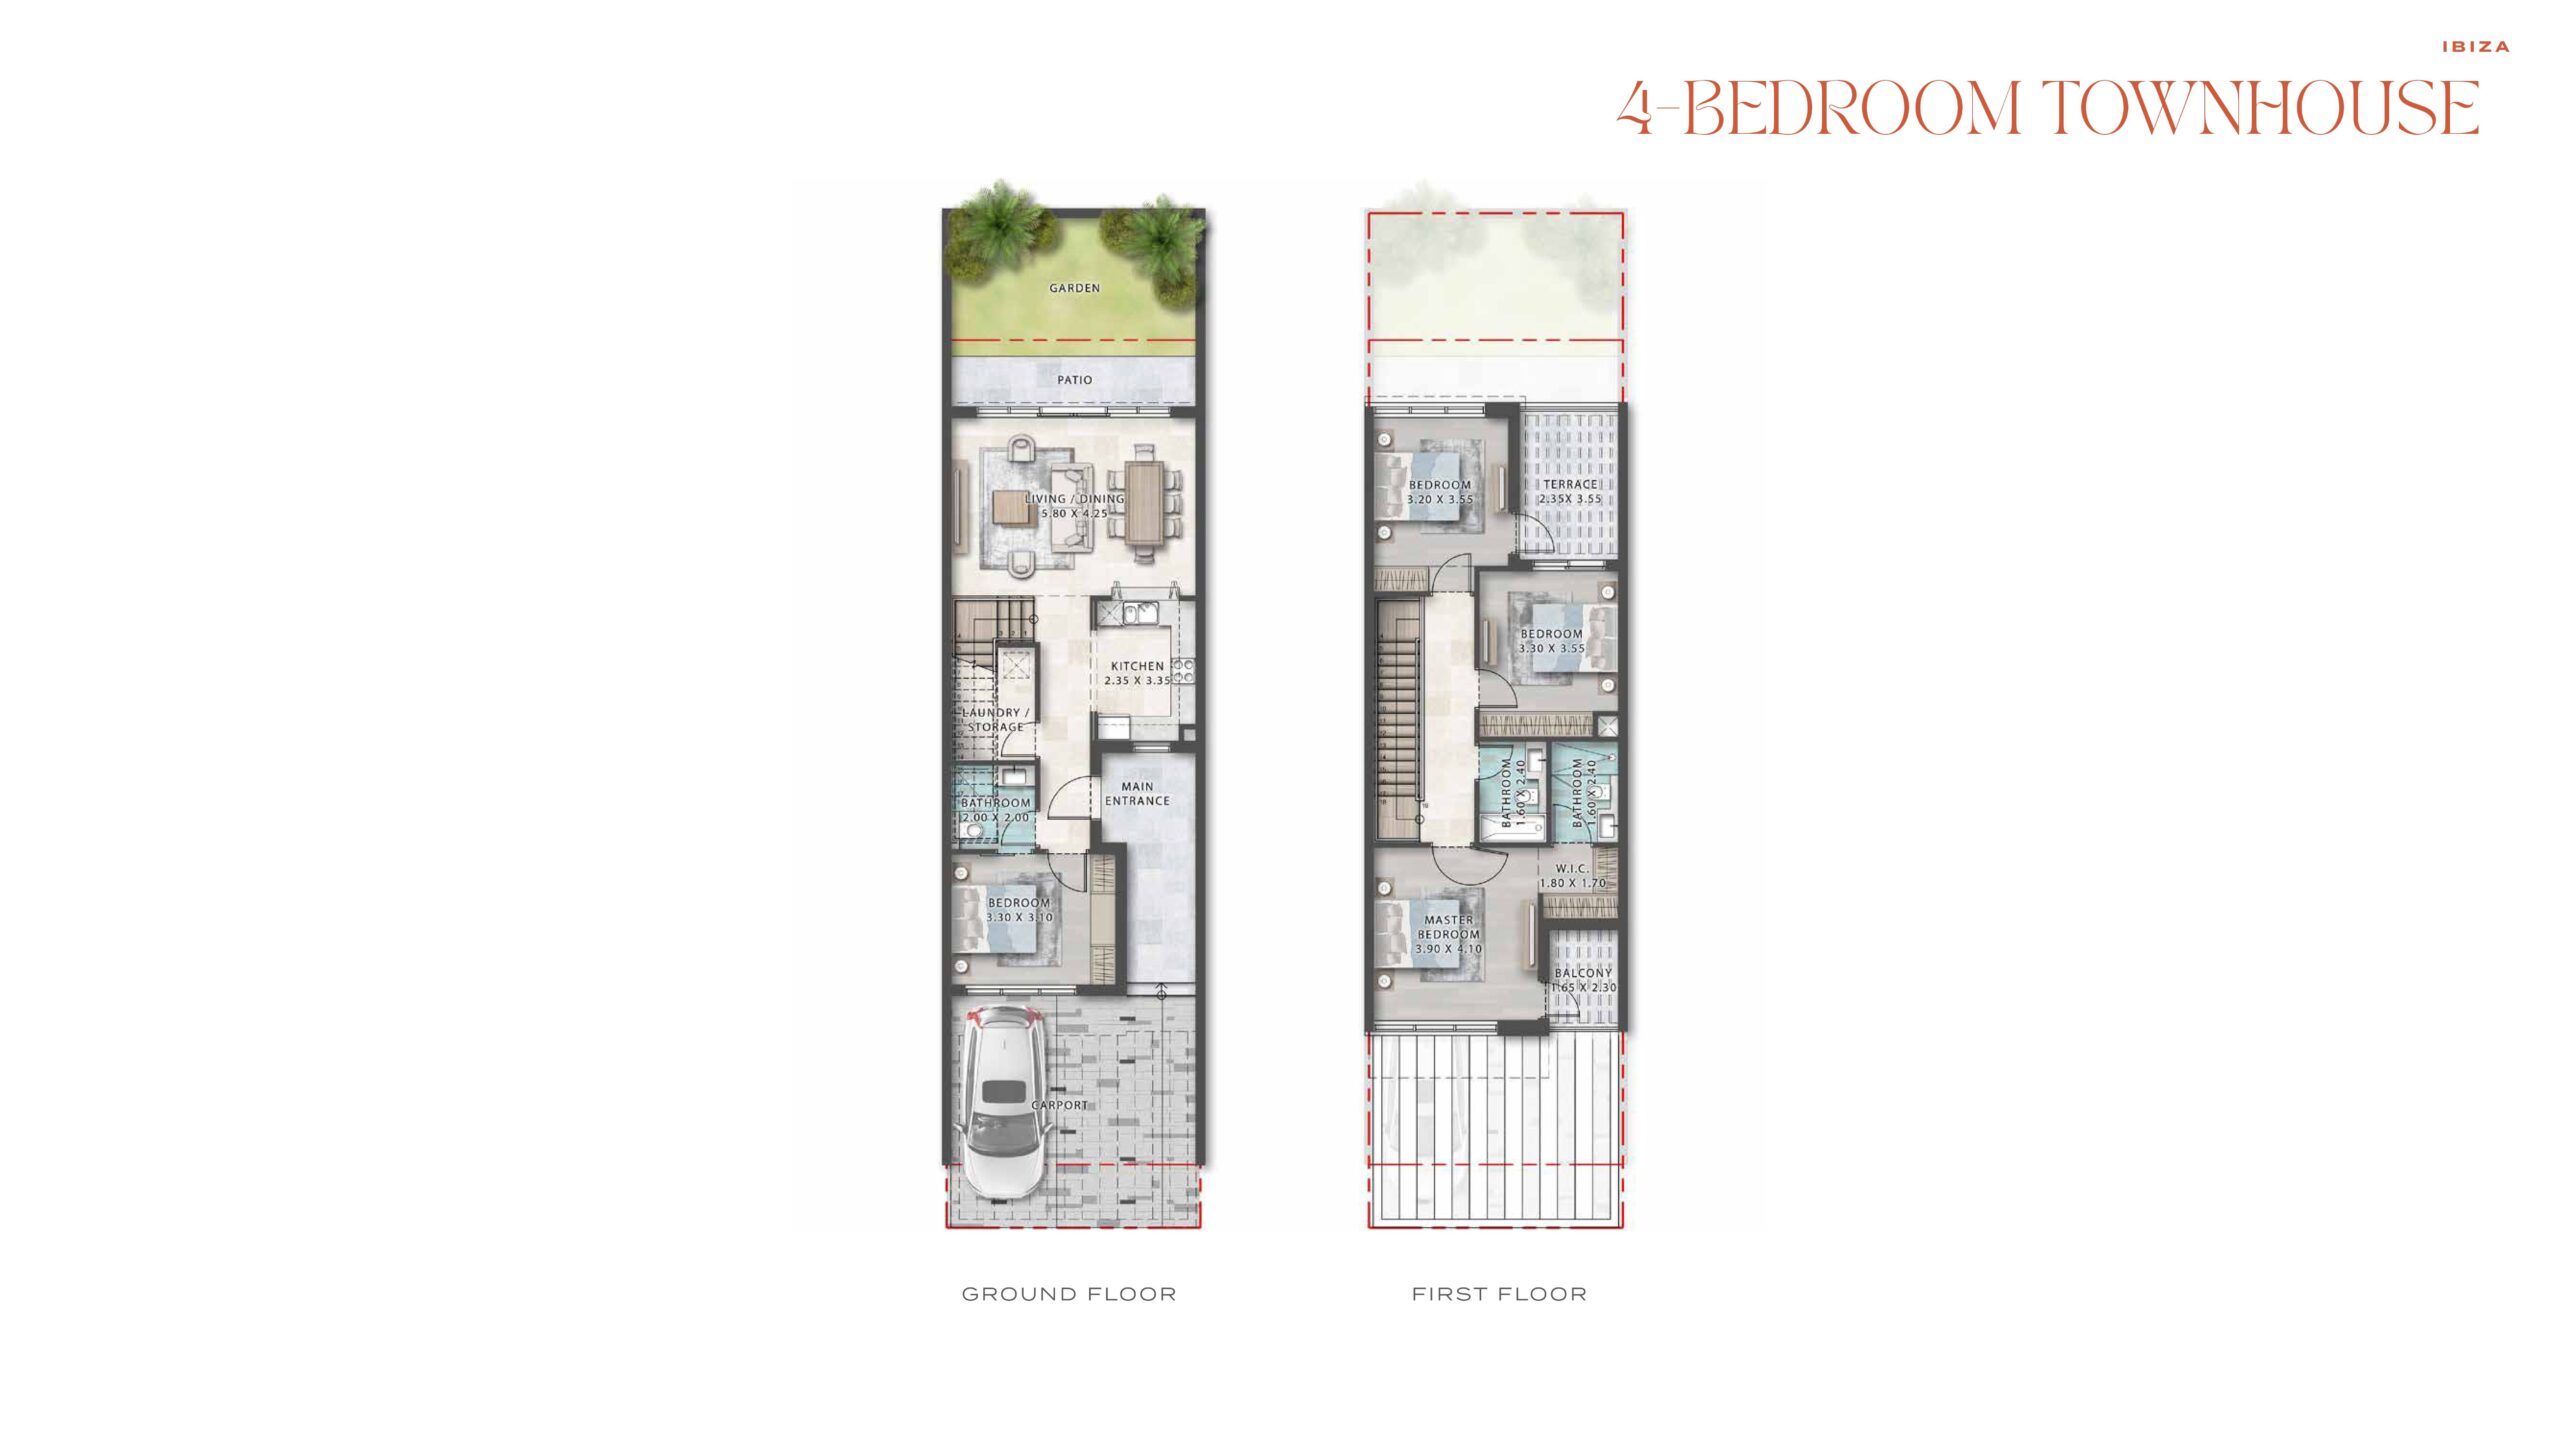 4 Bedroom Townhouse Floor Plans